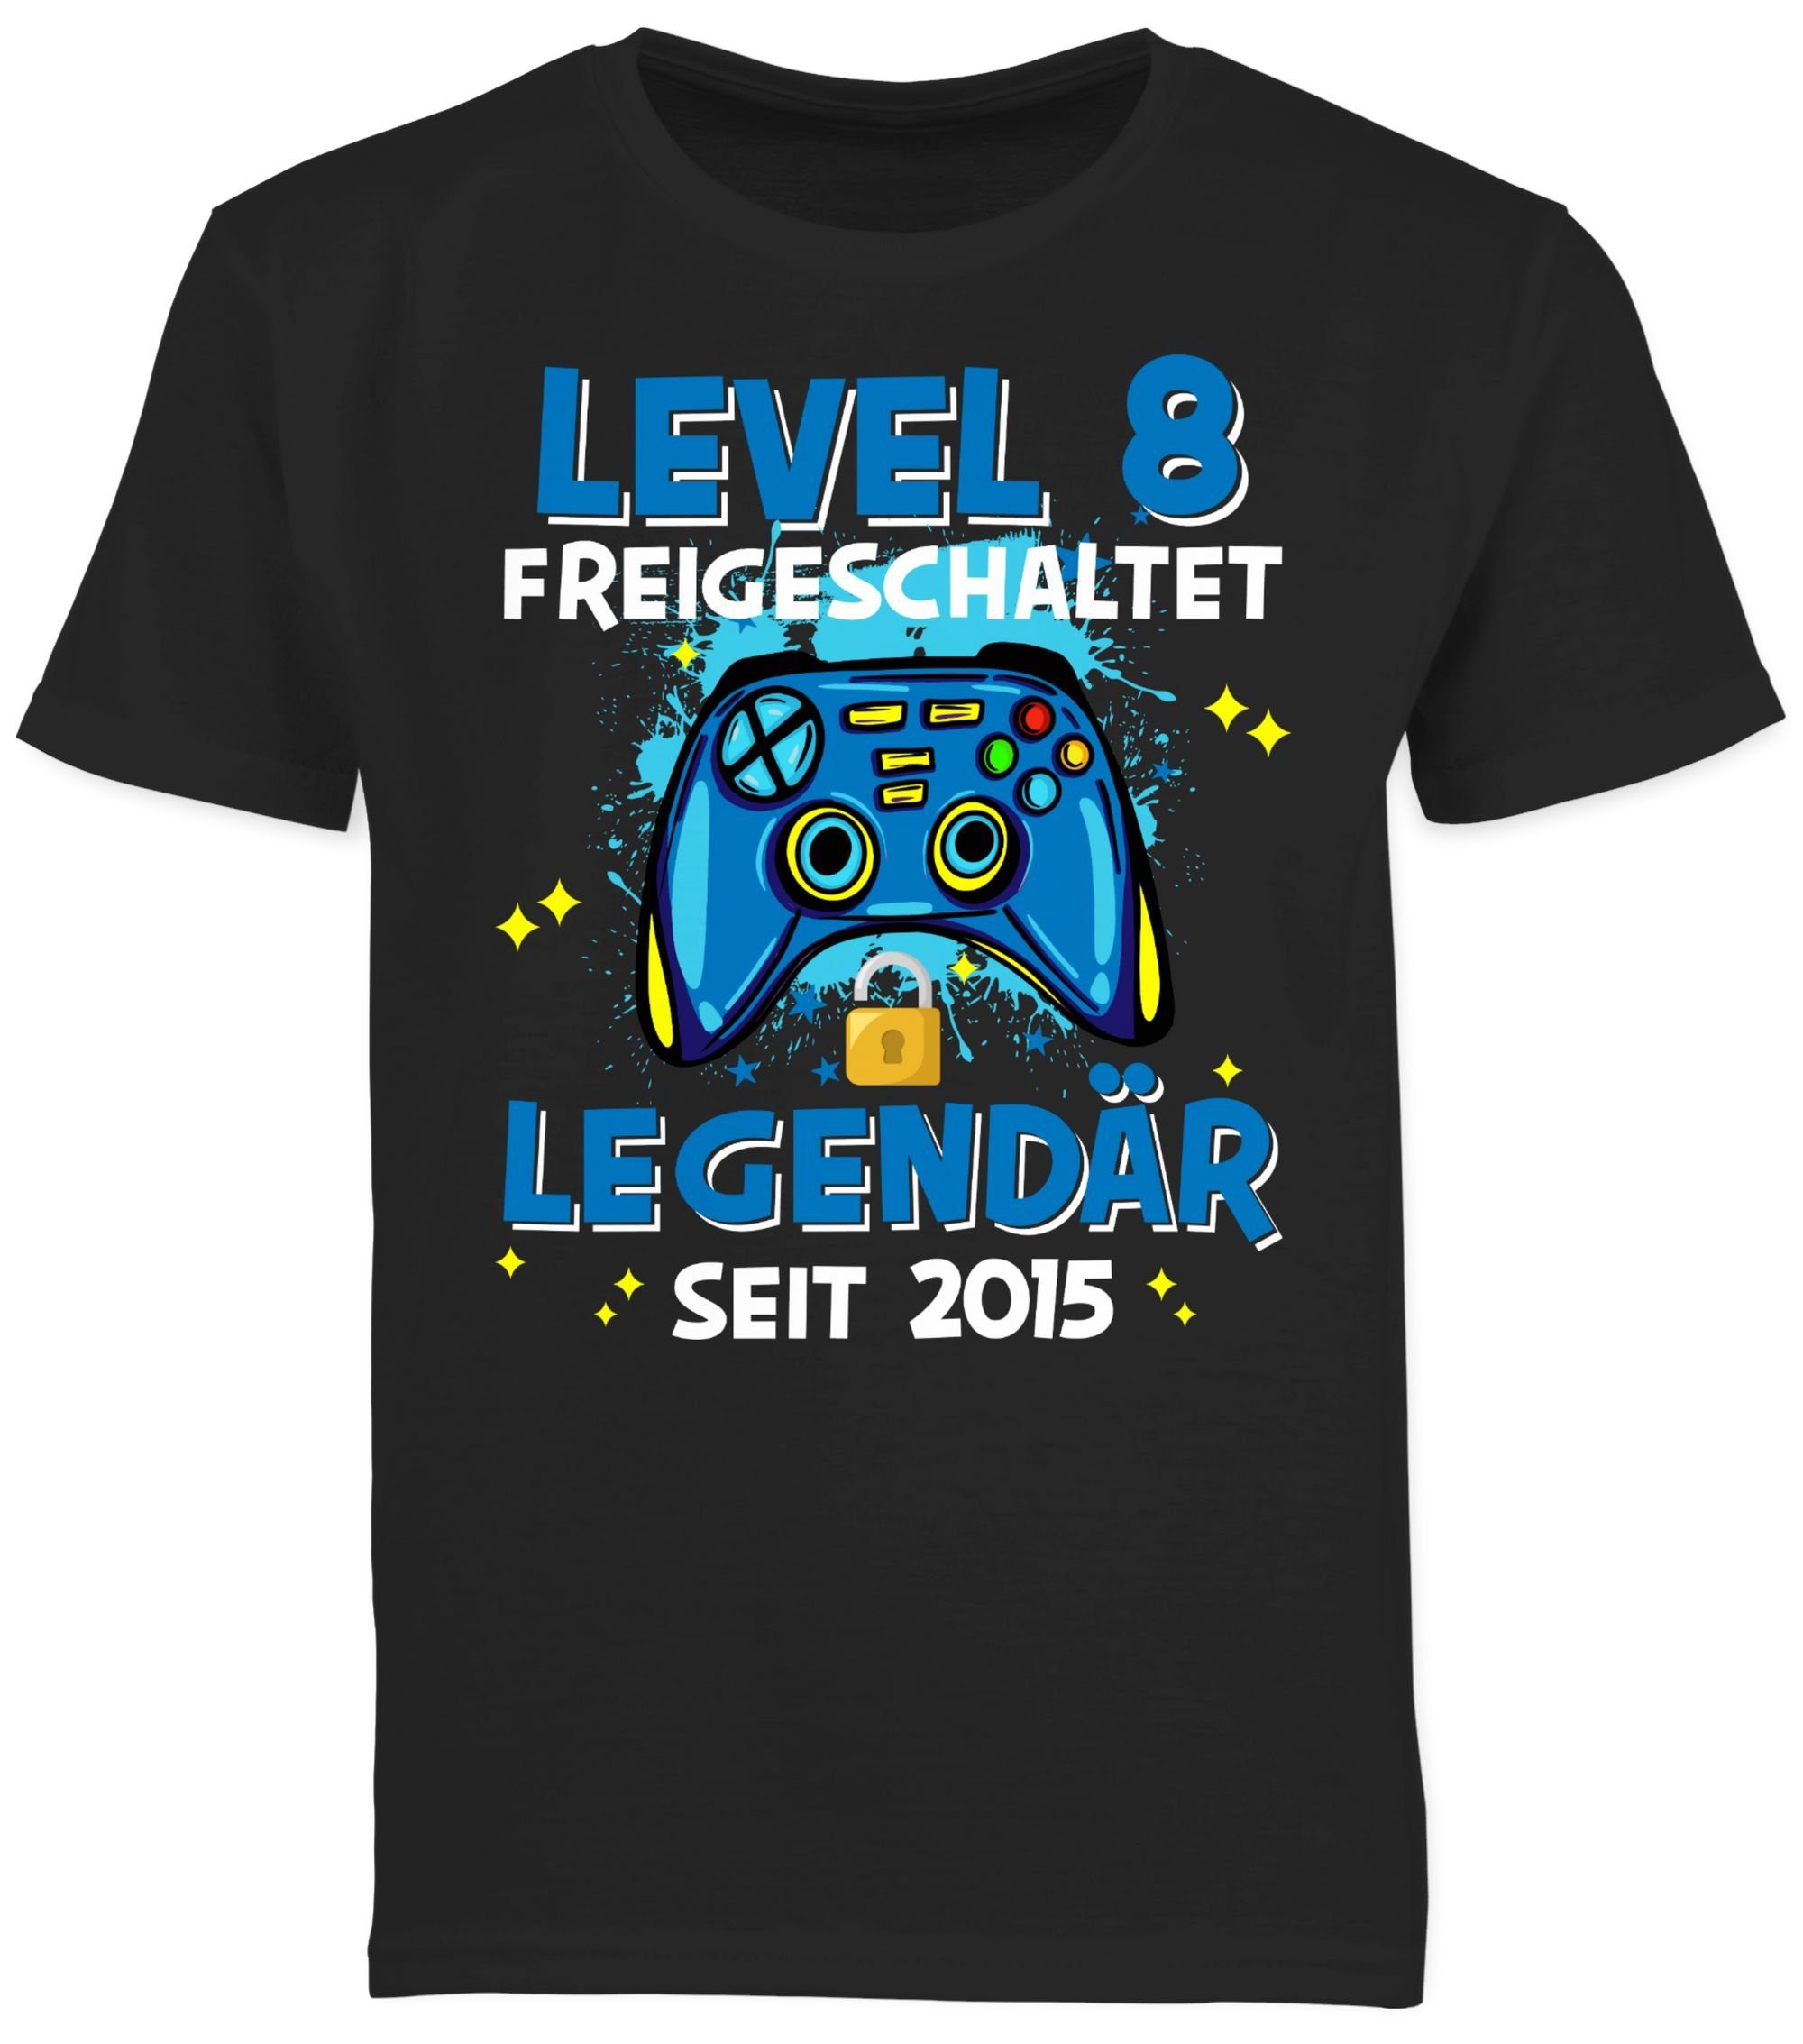 Shirtracer T-Shirt Level 8 8. freigeschaltet Schwarz Geburtstag seit 2015 Legendär 03